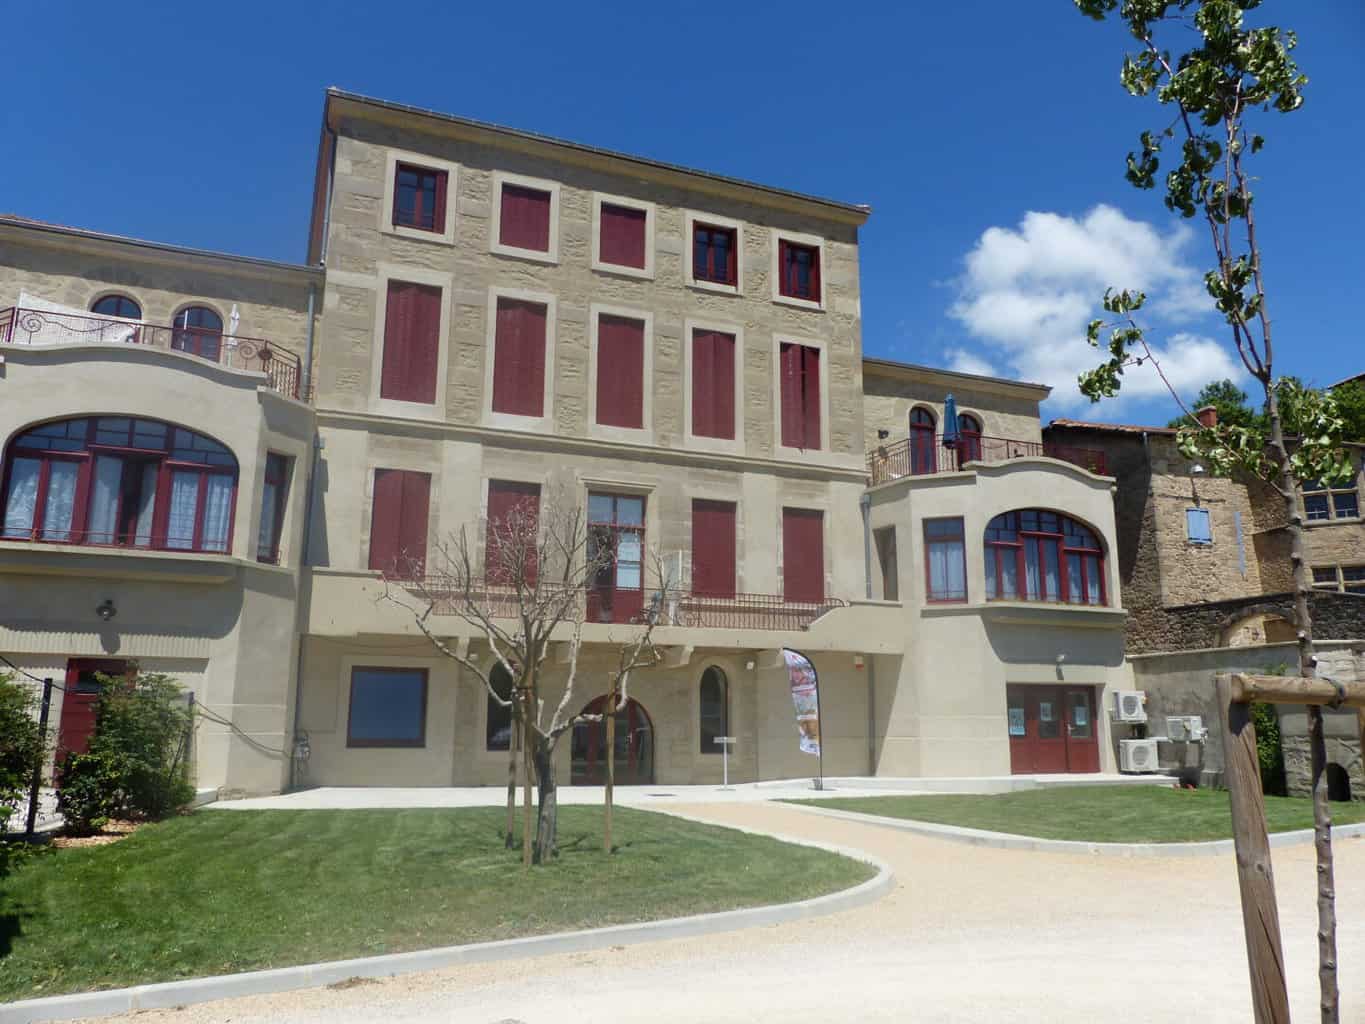 image Saint-Donat-sur-l’Herbasse (26) : 11 nouveaux logements sociaux dans la maison Lemonon Chancel